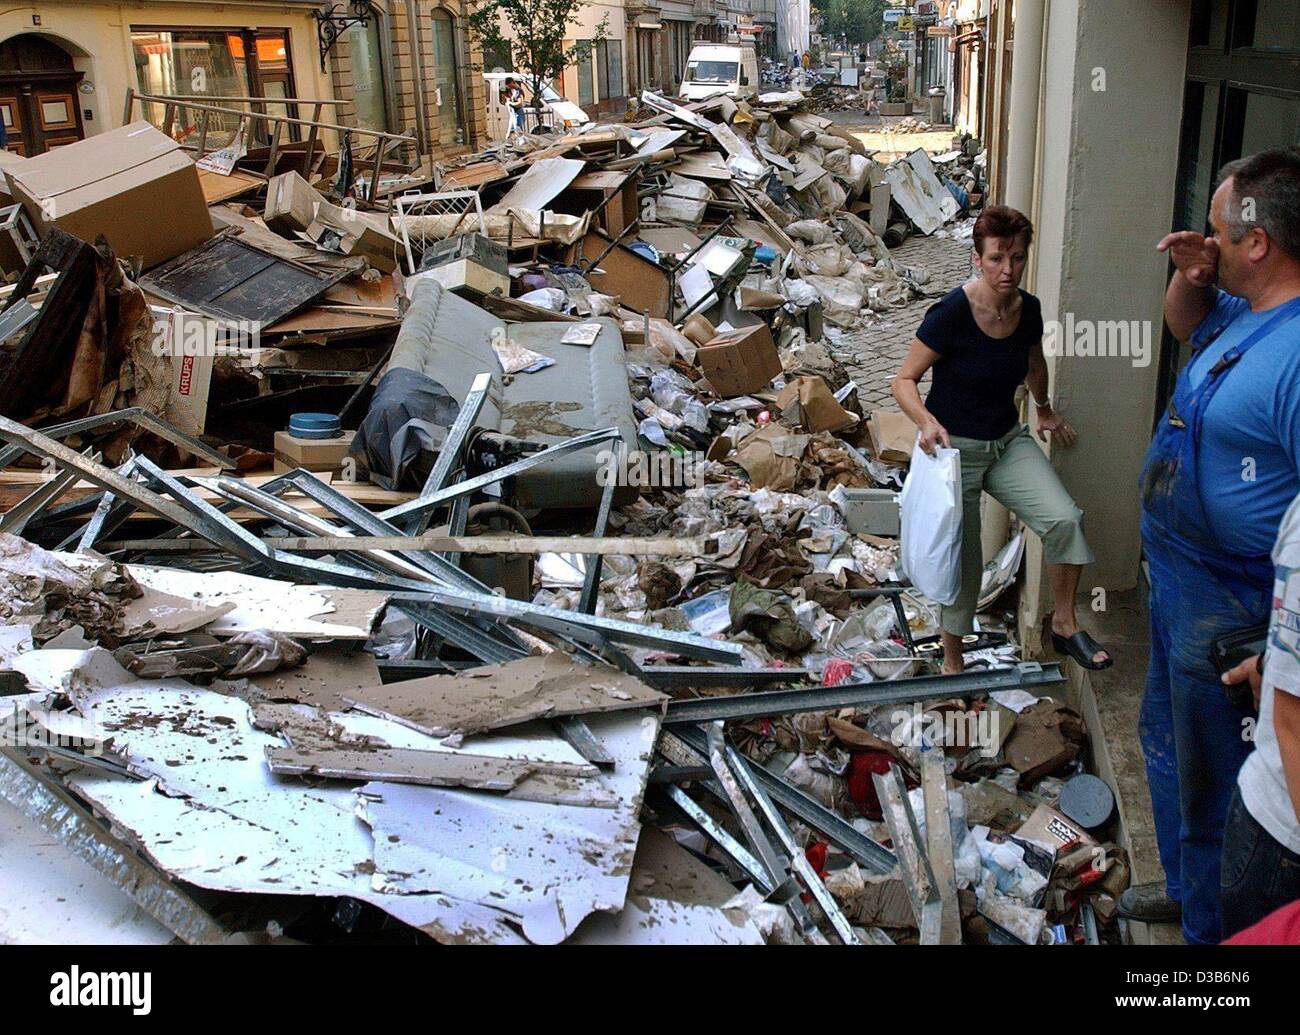 (Afp) - Une femme fait son chemin à travers les ordures des maisons inondées s'empilent sur la rue à Pirna, 21 août 2002. Après l'eau élevée retirées et laissé un chaos, les résidents sont occupés à nettoyer. Les pires inondations en Allemagne dans un siècle a causé des dommages catastrophiques estimées dans les bil Banque D'Images